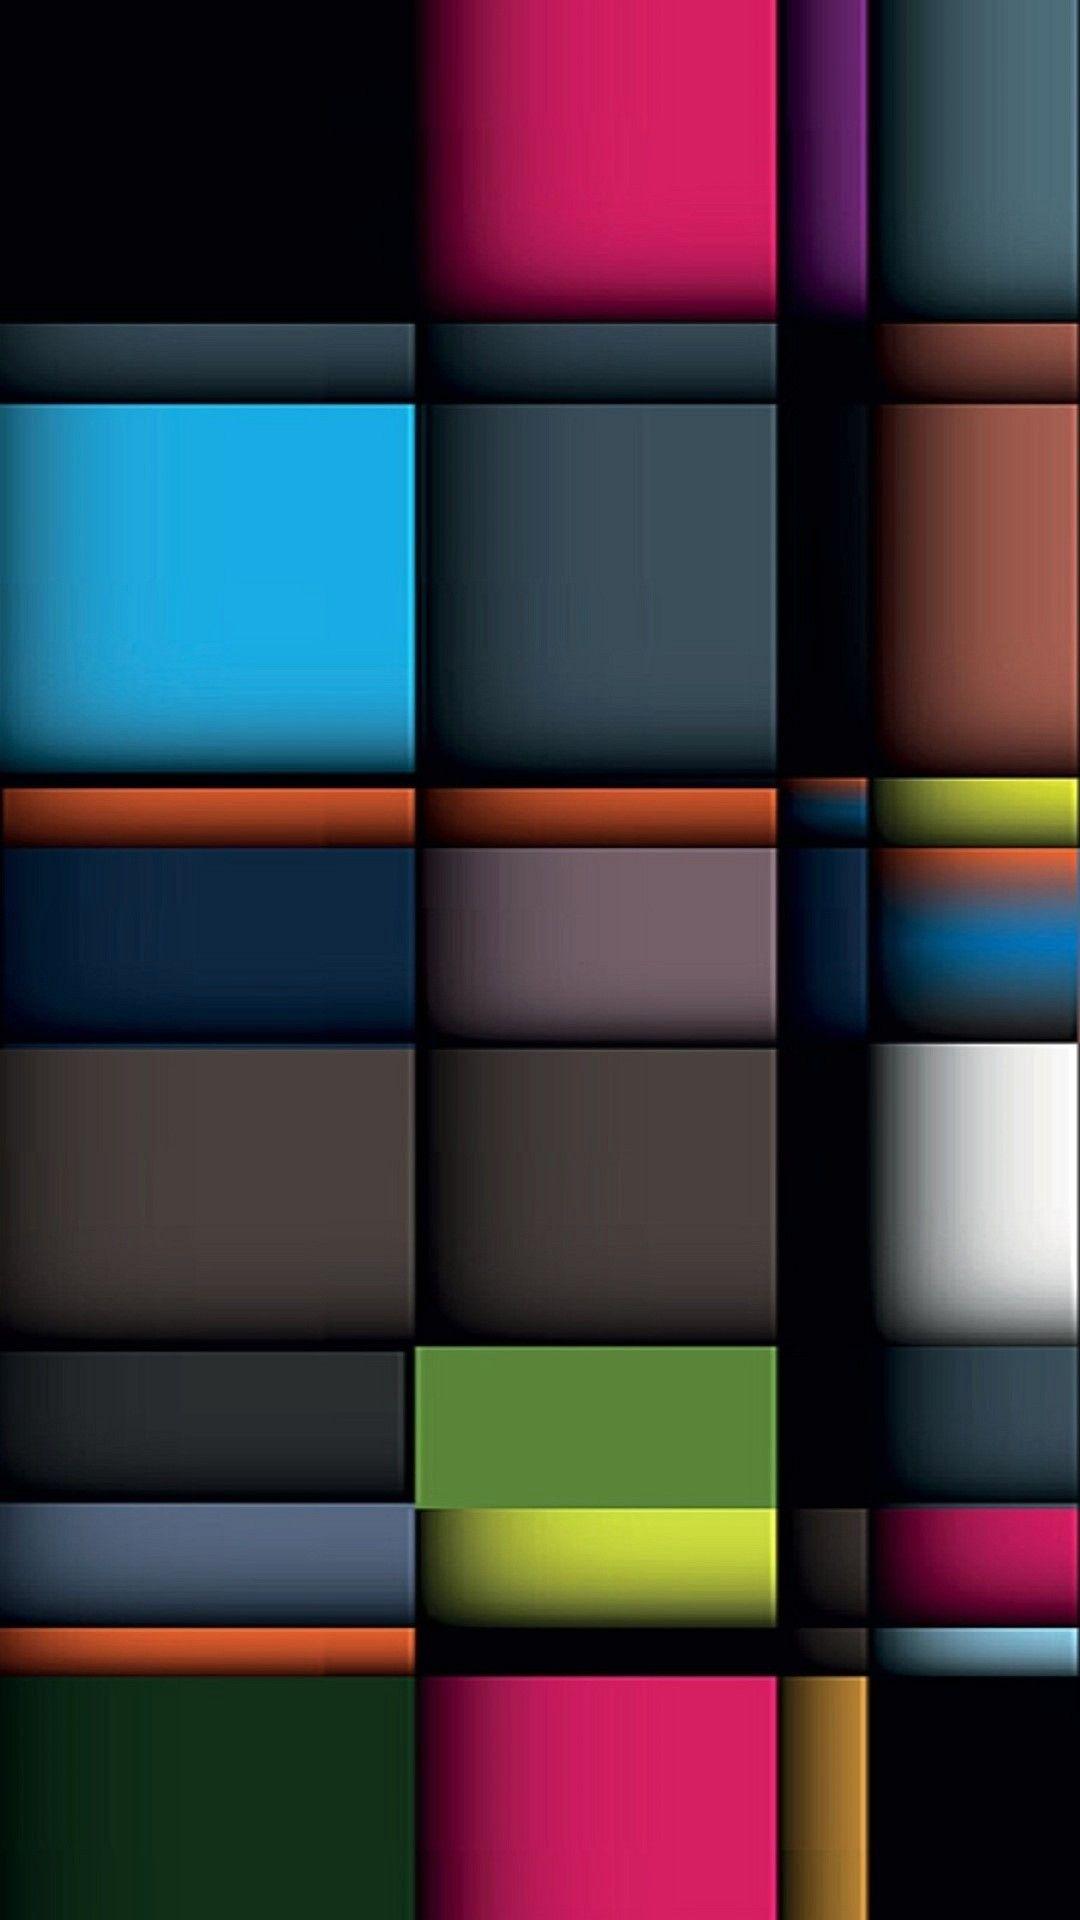 Wallpaper Galaxy Note 3 Full HD 1080 1920 96 x 1920